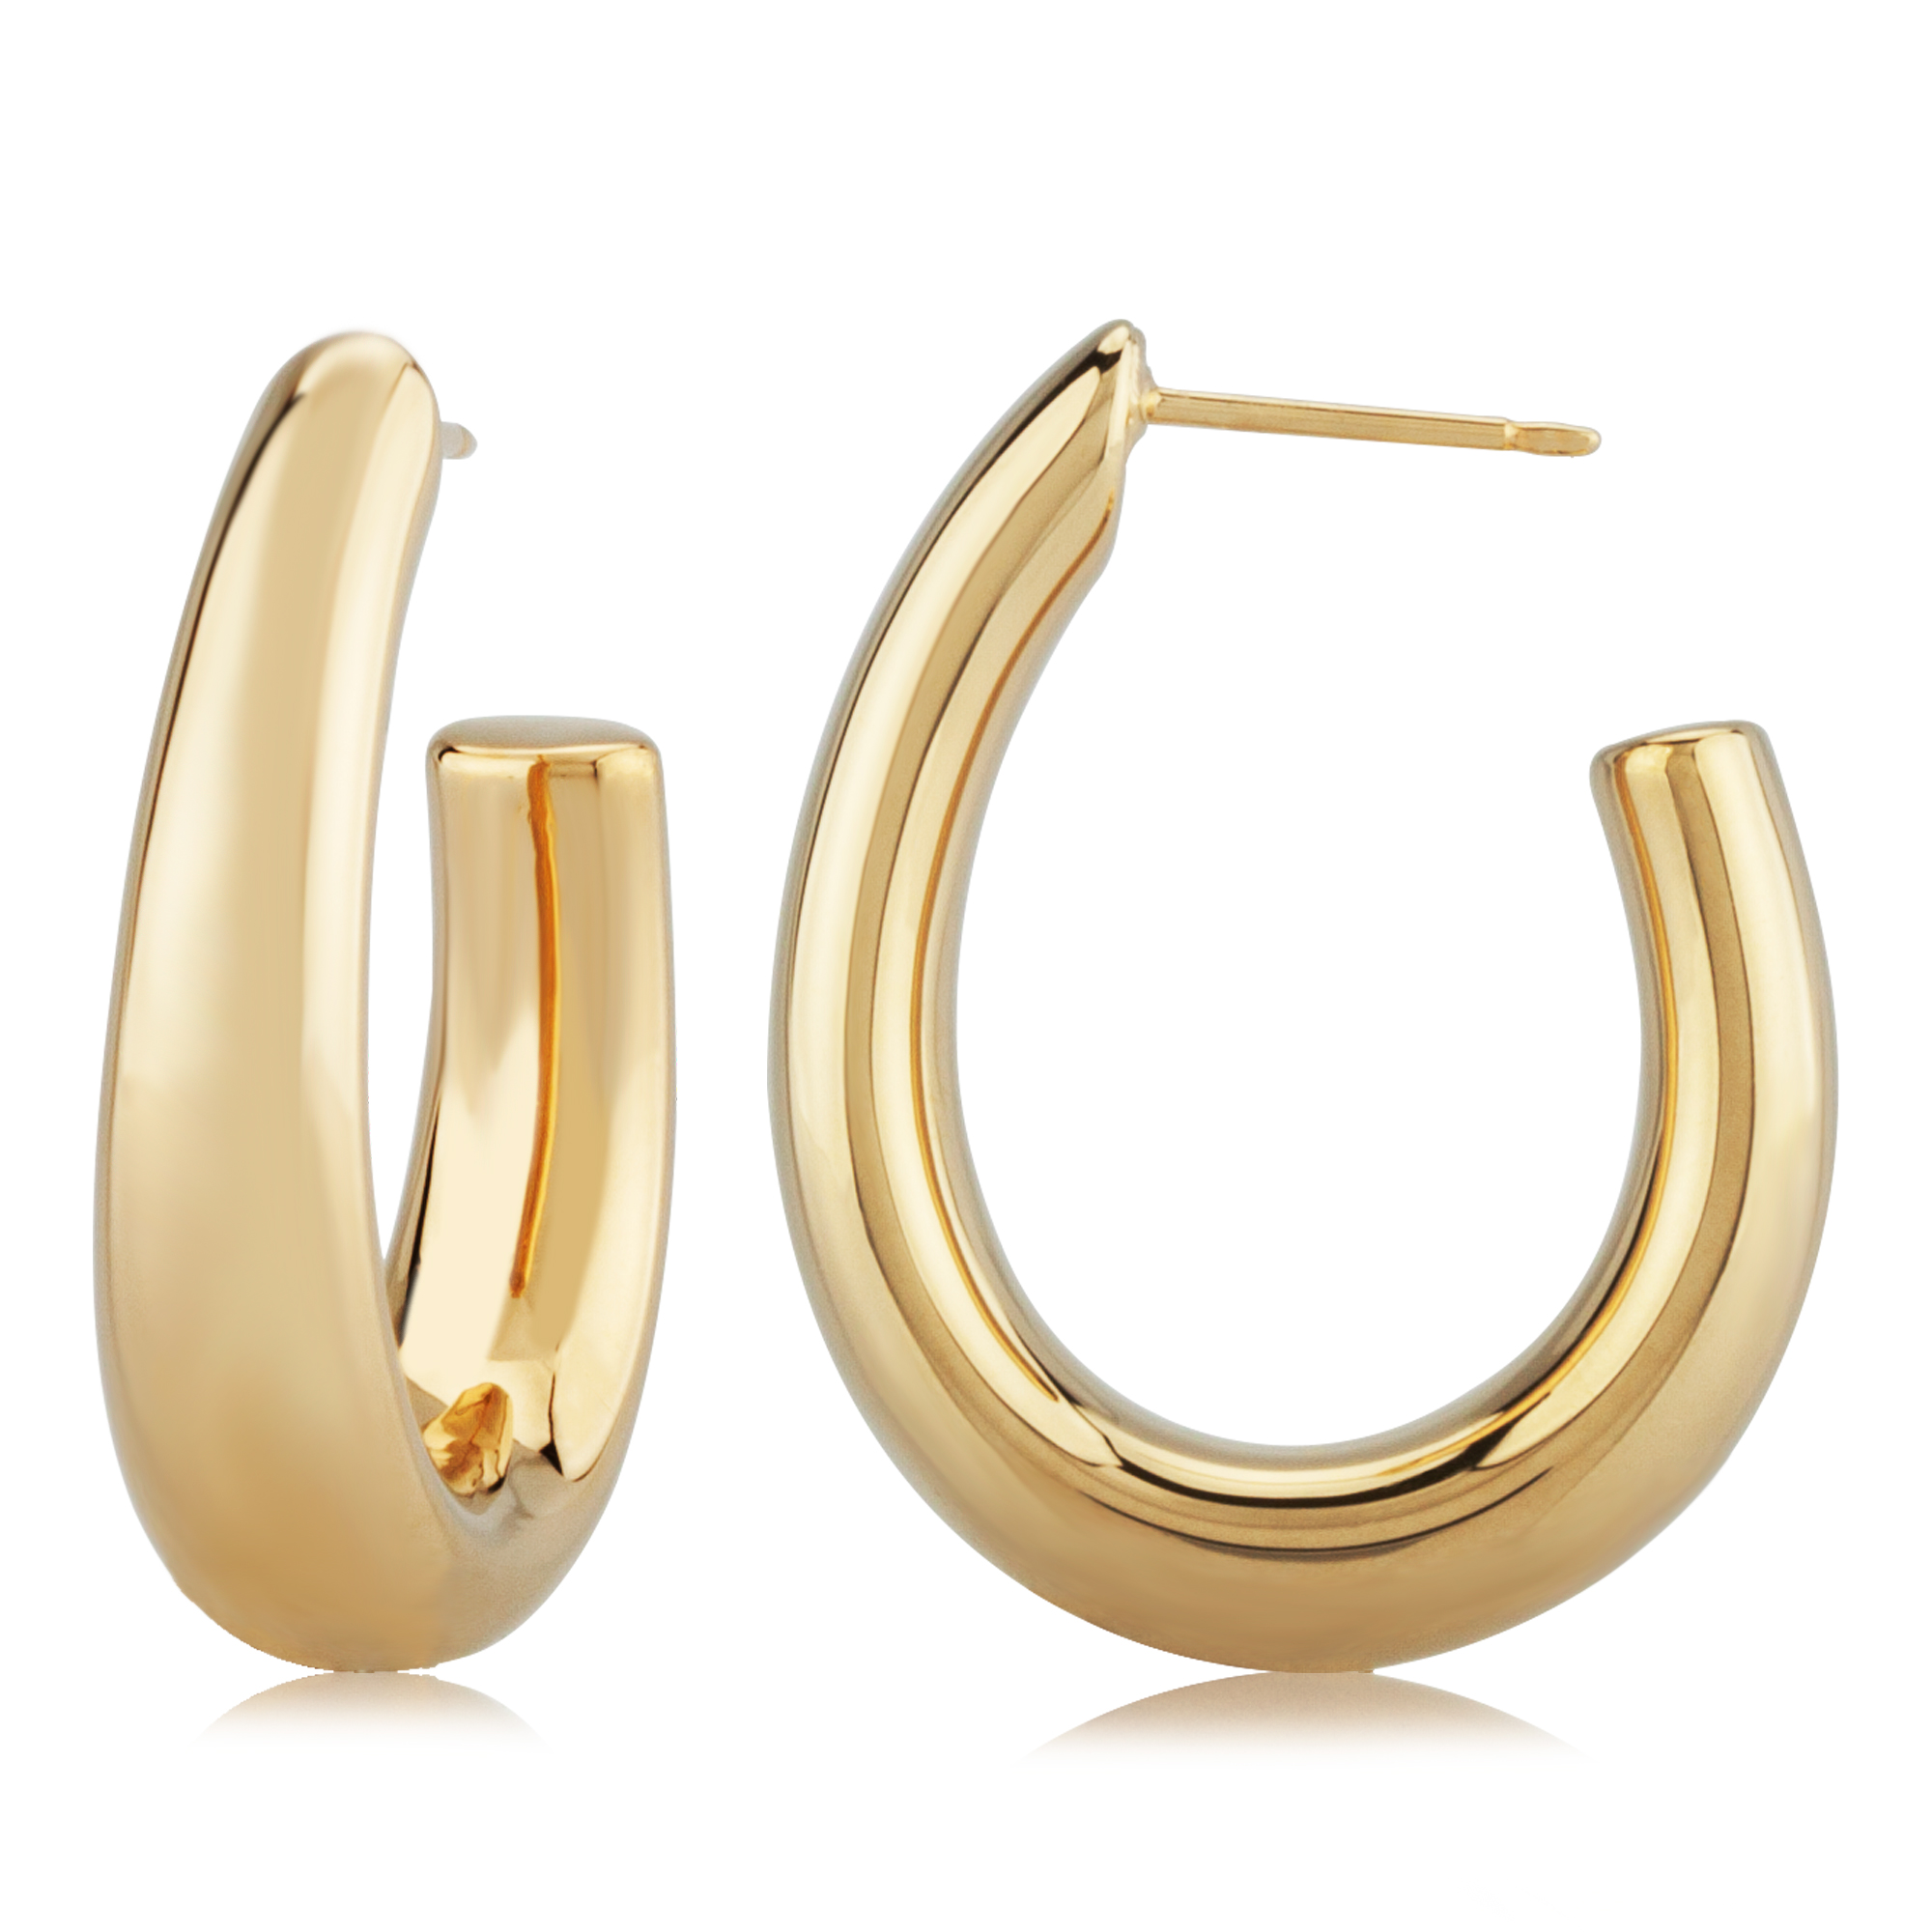 Onyx Stud Earrings-6m-black Silver Earrings-for Women-men-flat